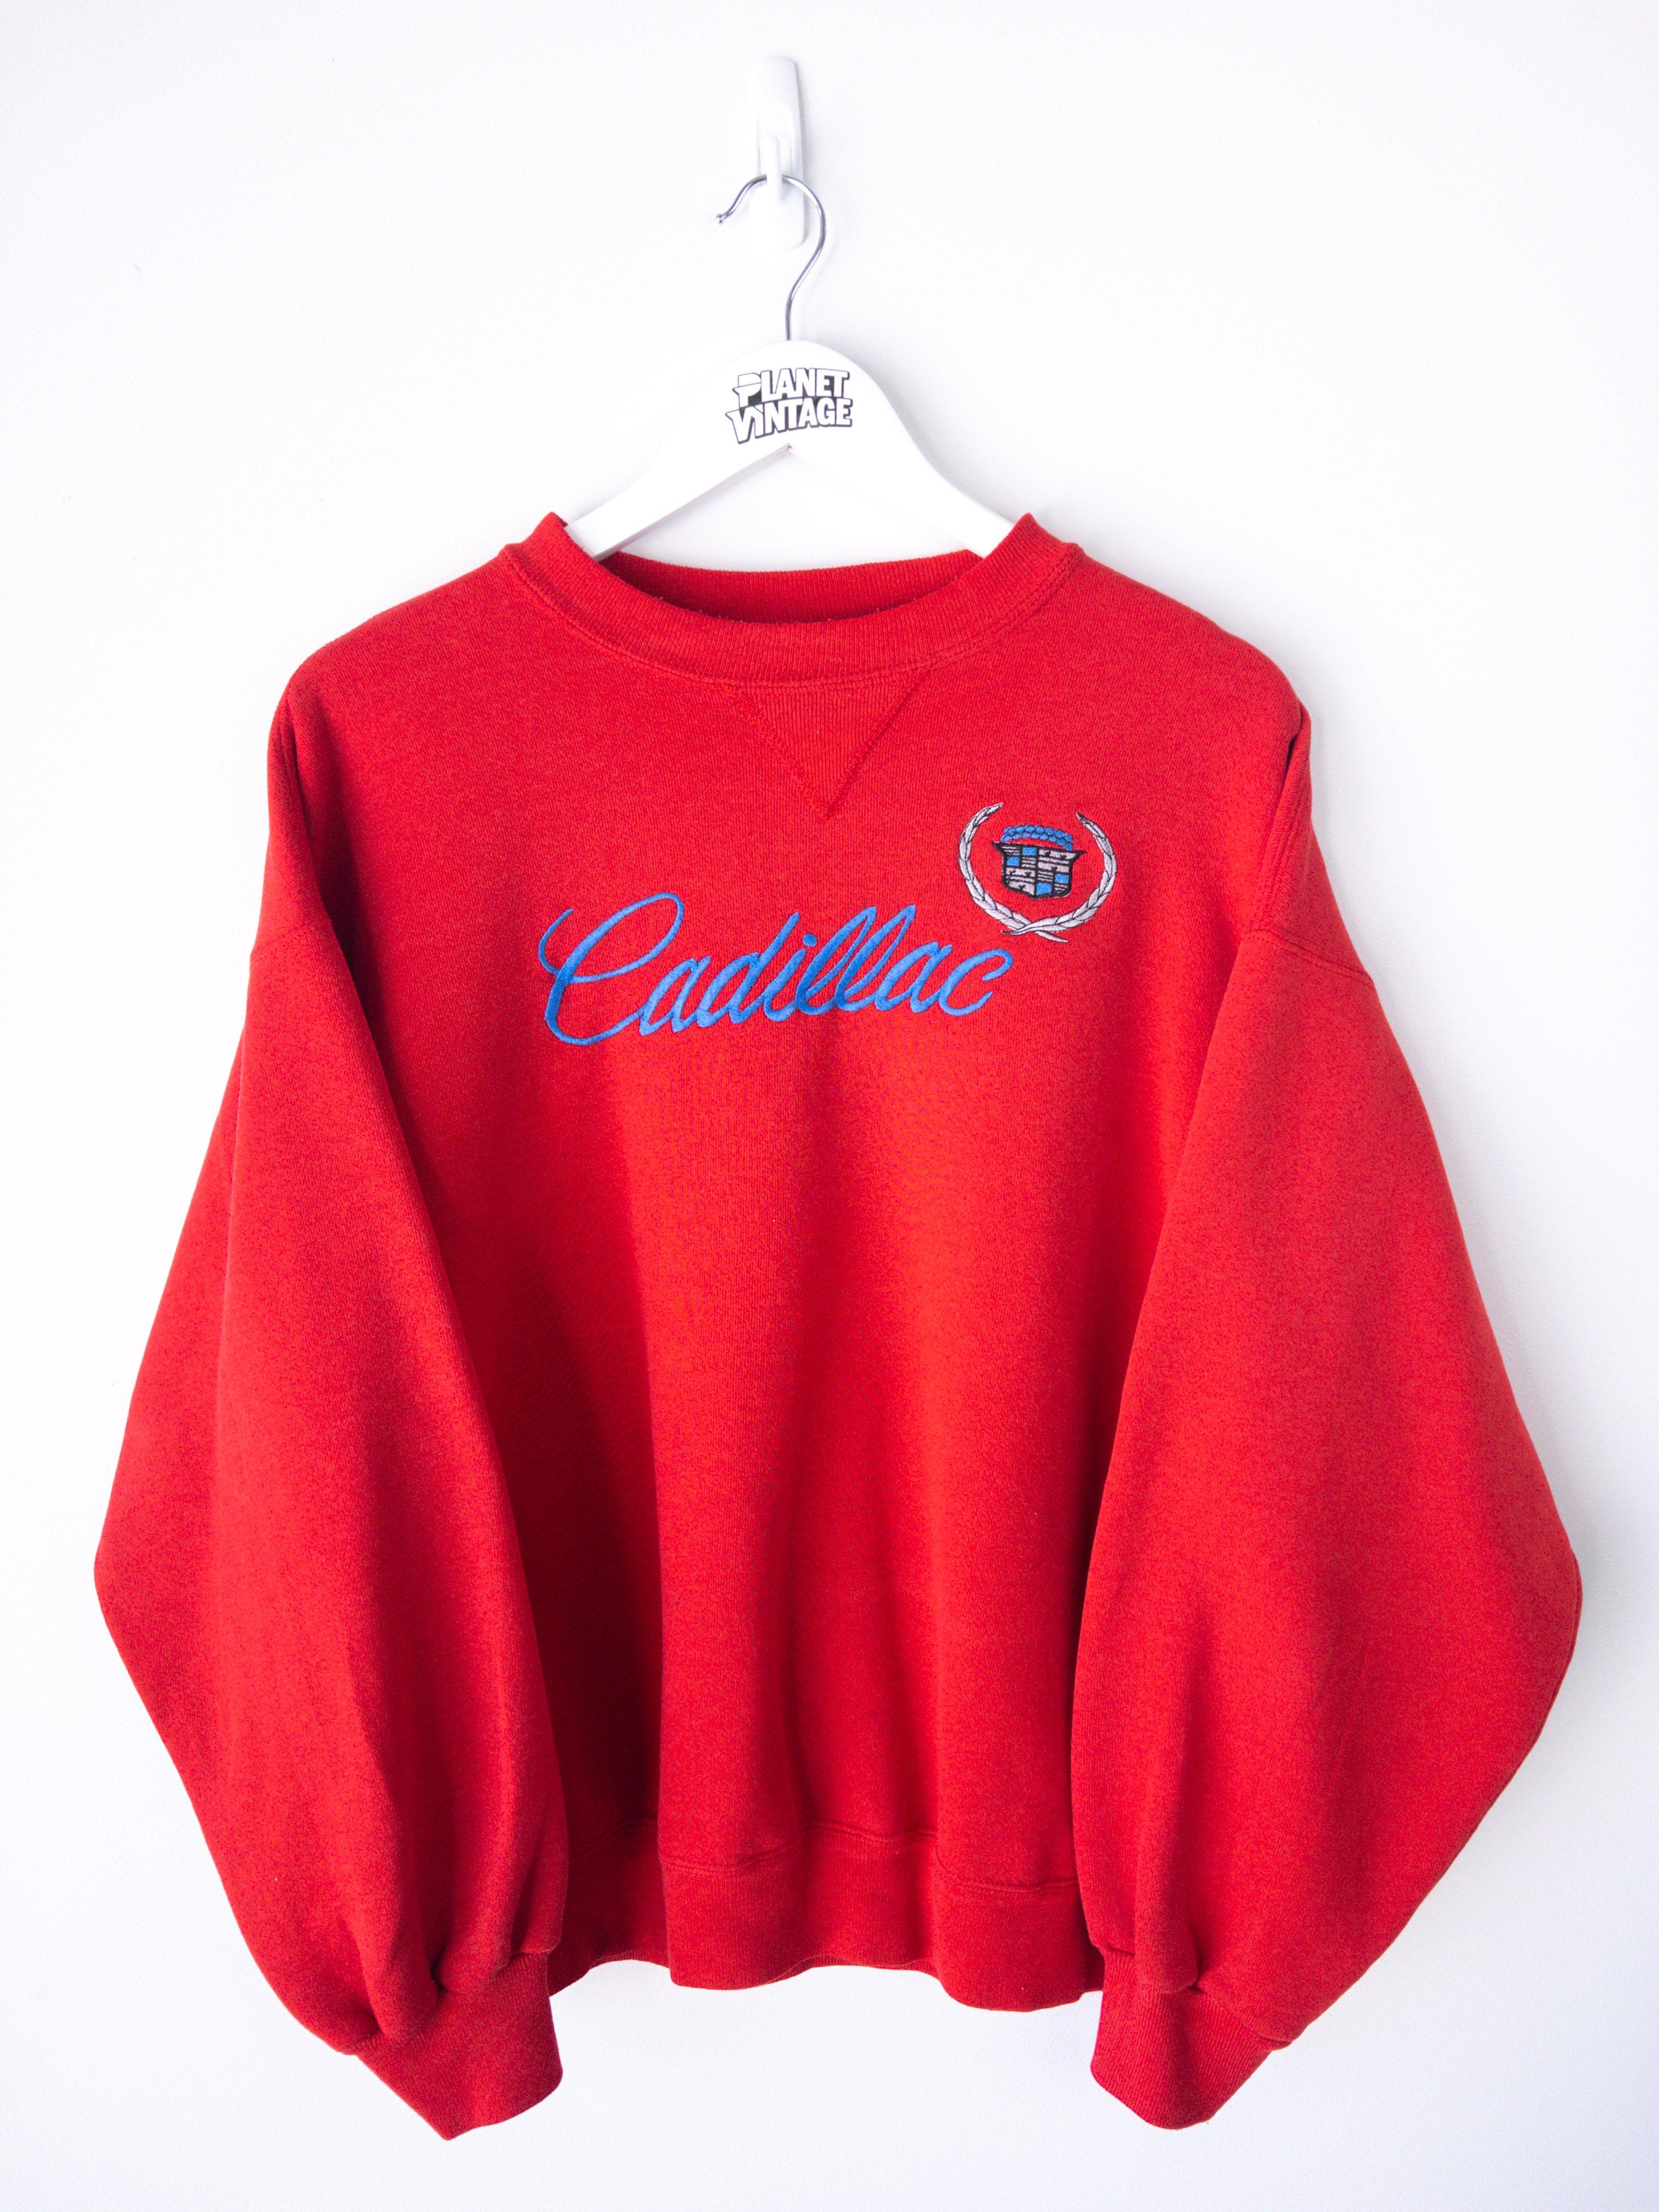 Vintage Cadillac '90s Sweatshirt (L)